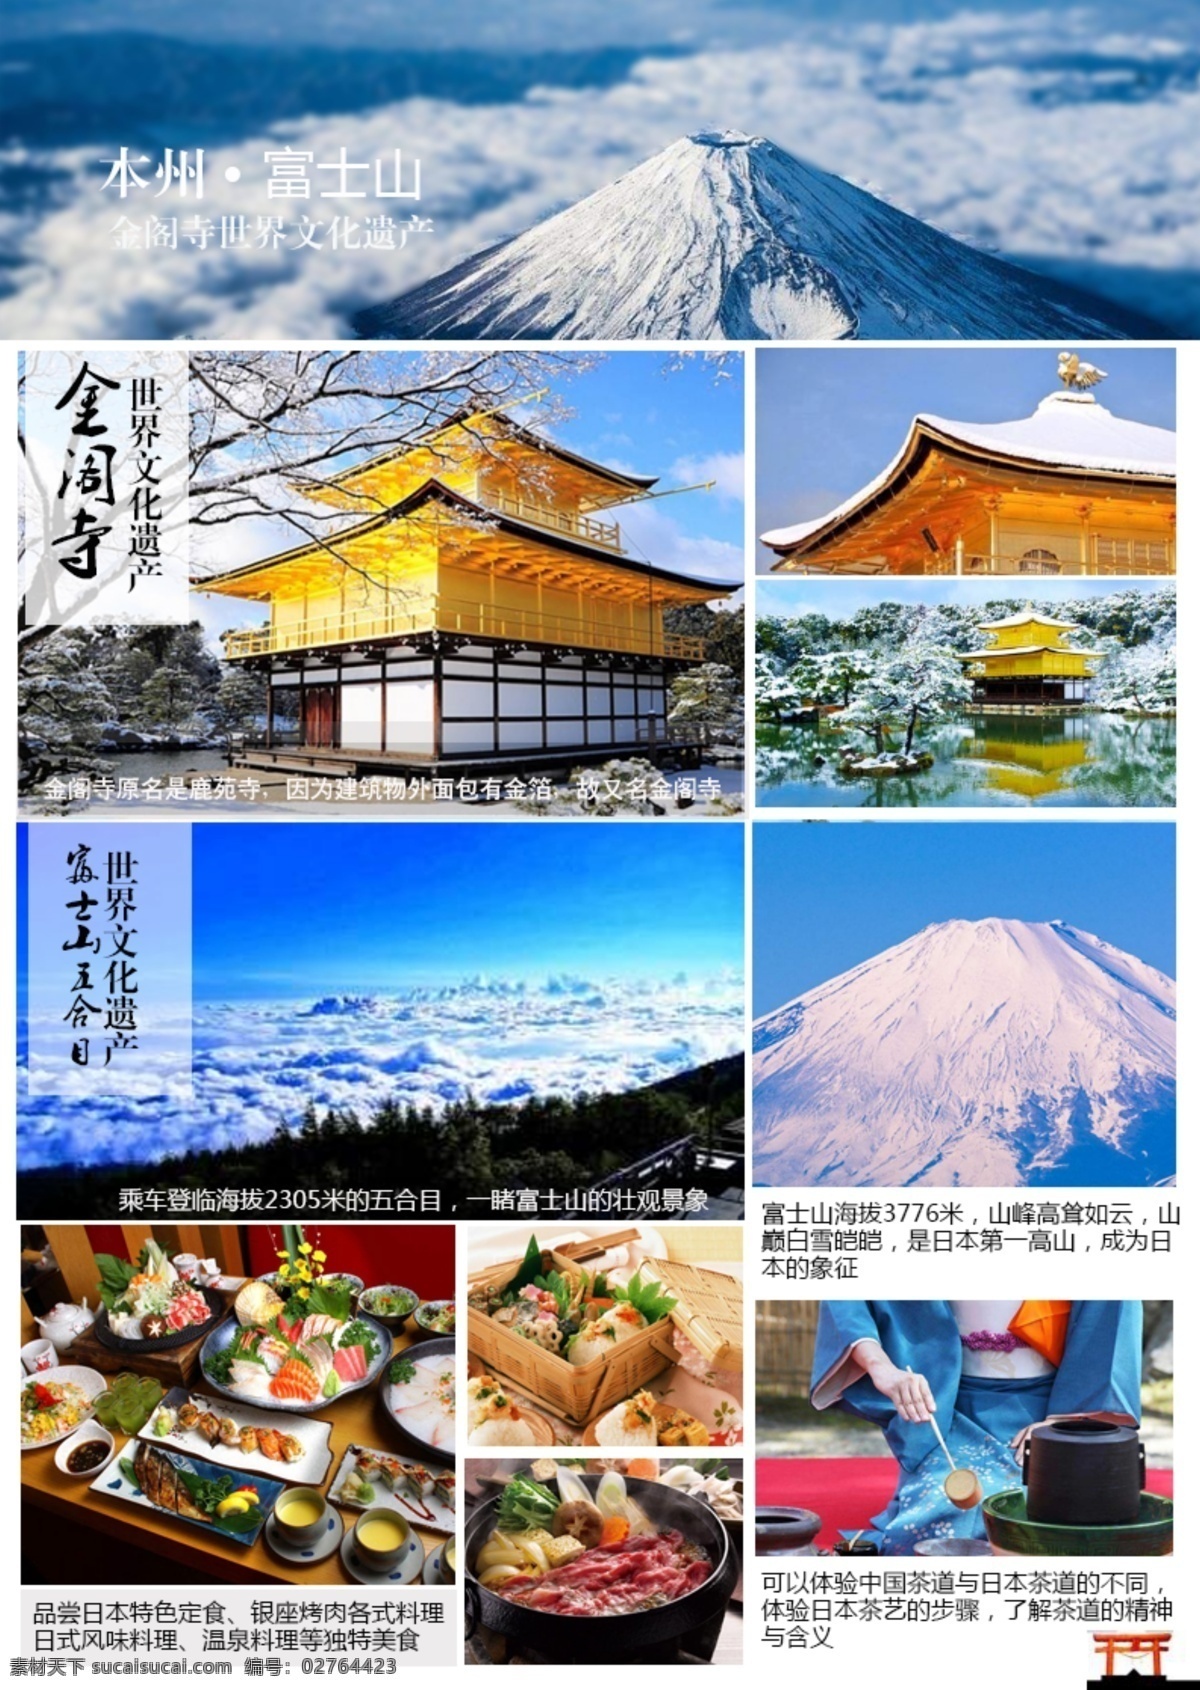 日本景点介绍 日本旅游 日本景点 金阁寺 富士山 日本美食 日本茶道体验